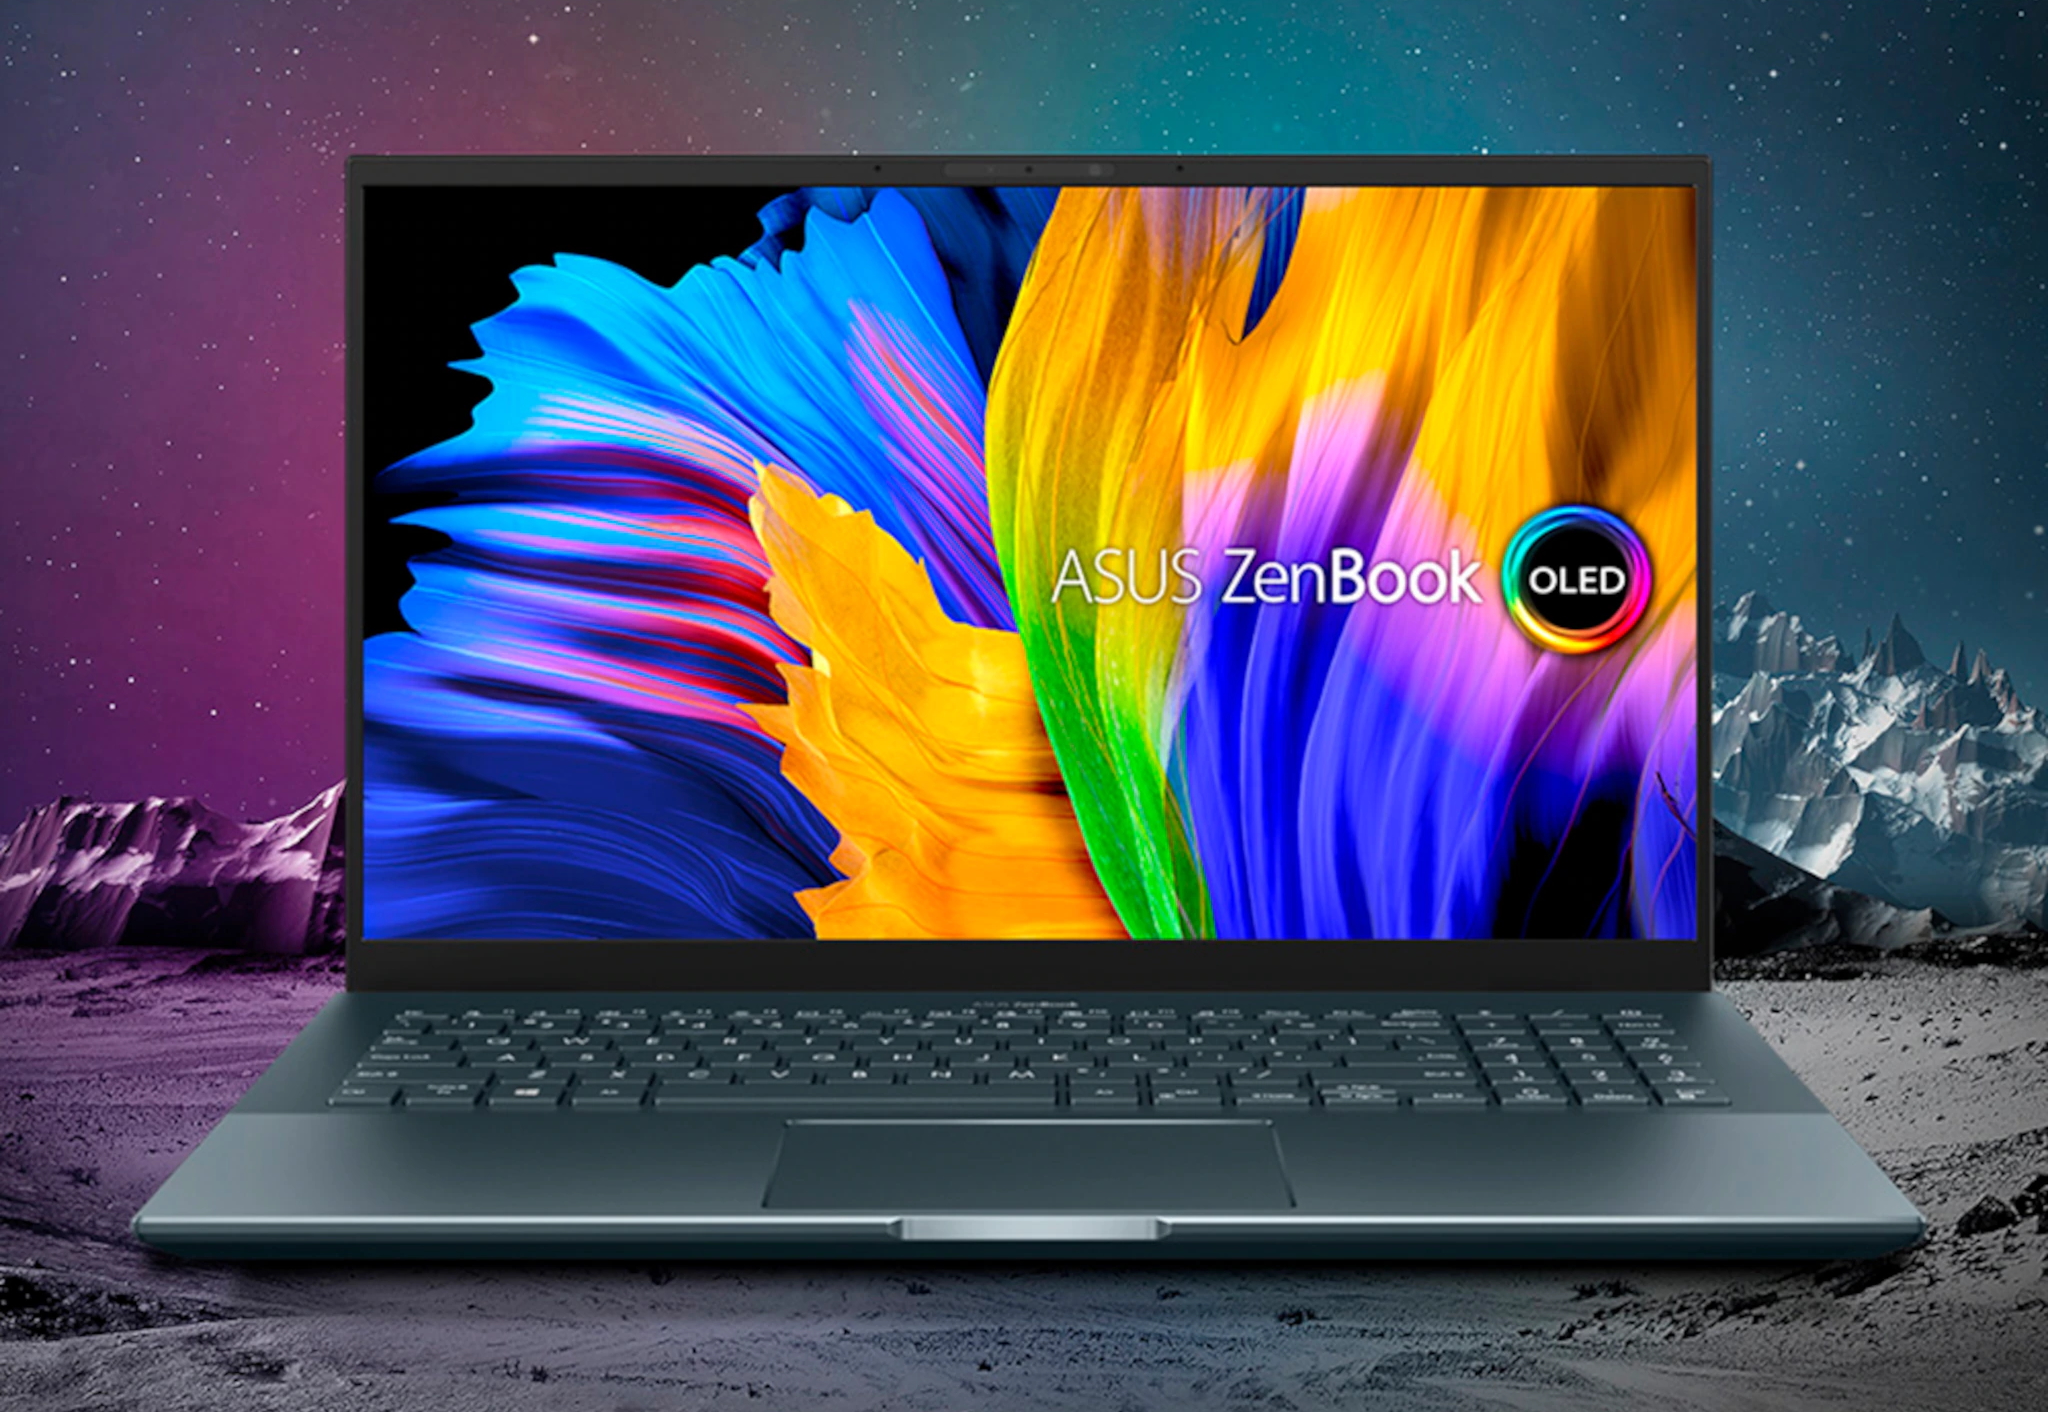 ASUS ZenBook Pro 15 aparece en las tiendas con un procesador AMD Ryzen 9  5900HX, una GPU NVIDIA GeForce RTX 3050 Ti y una pantalla OLED 4K -  